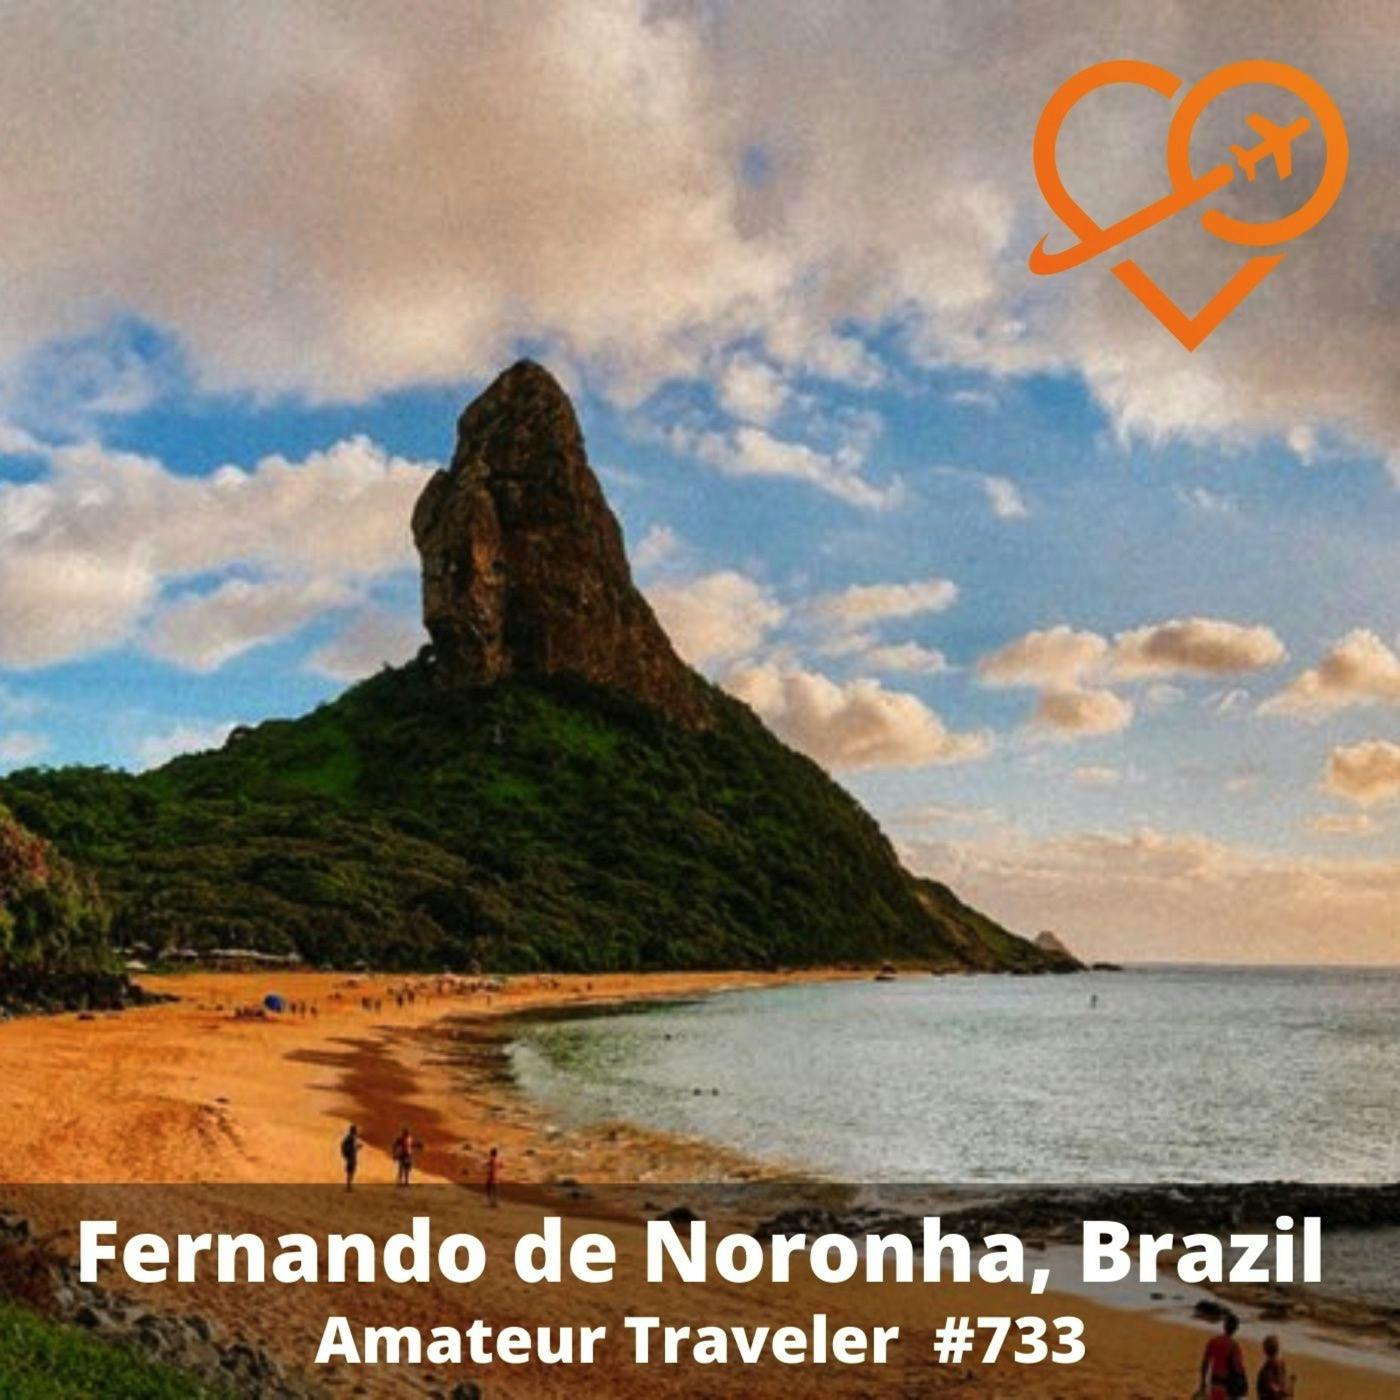 AT#733 - Travel to Fernando de Noronha, Brazil